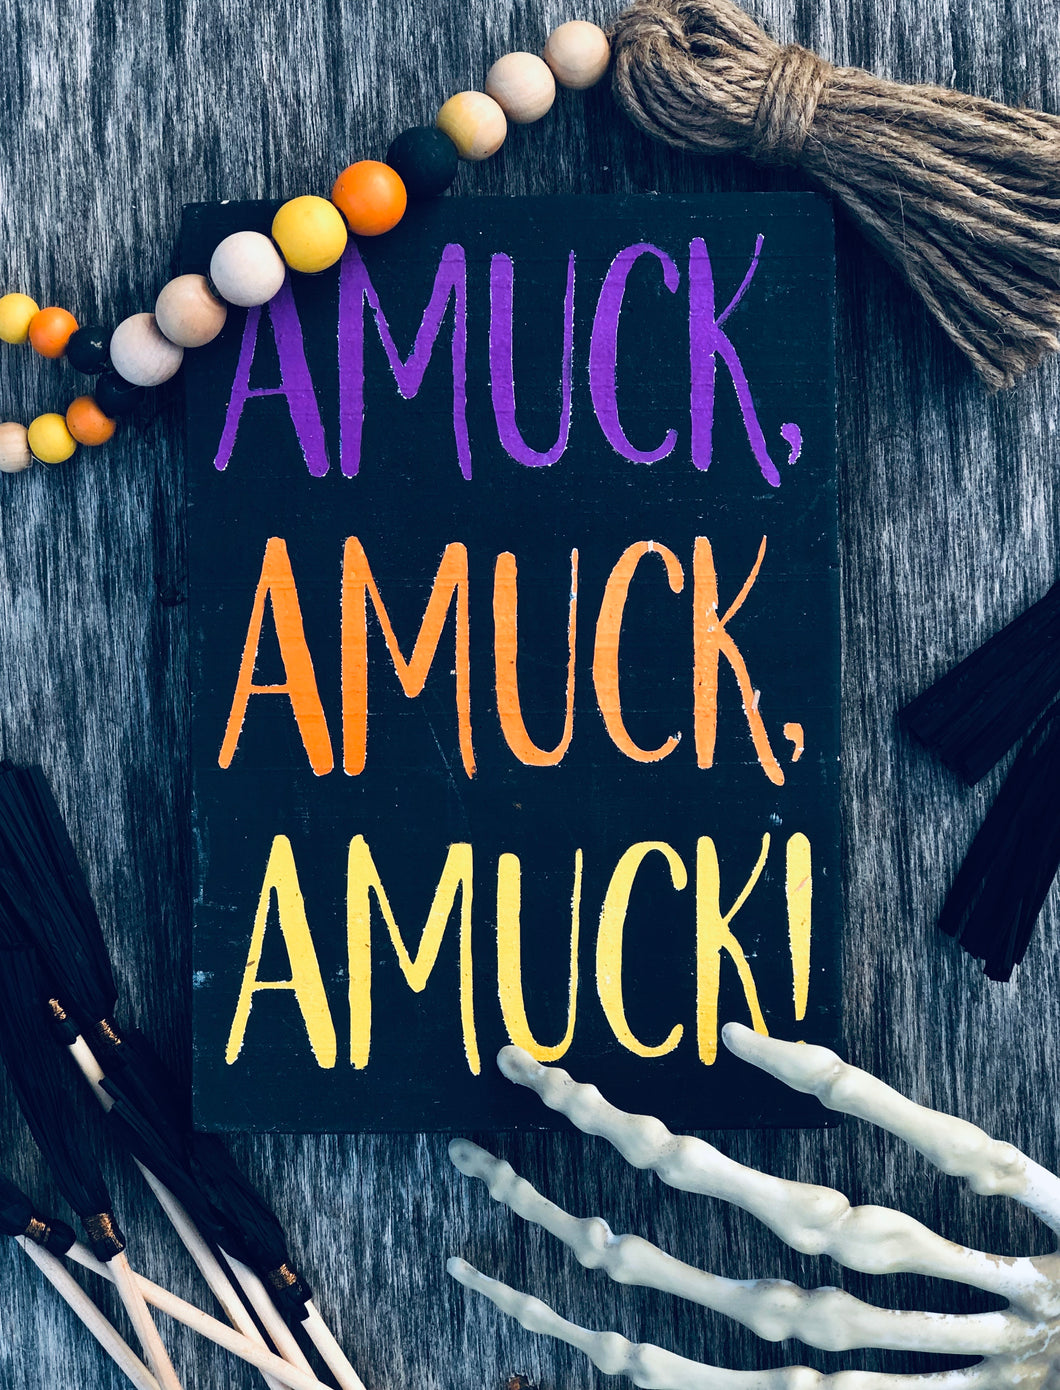 Amuck, Amuck, Amuck